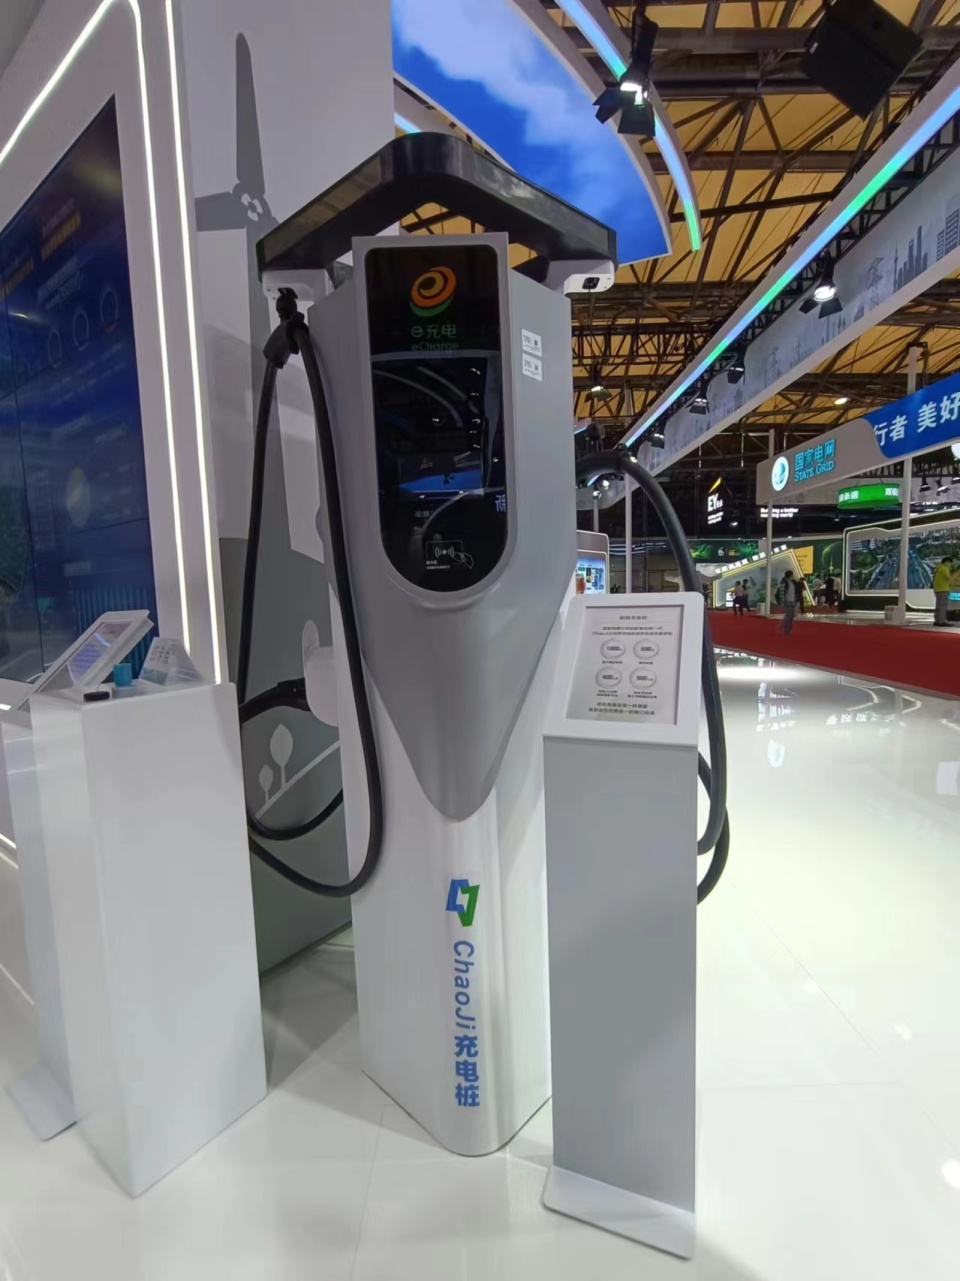 上海国际碳博会今日开幕,特斯拉展出赛博越野旅行车,国网带来超级充电